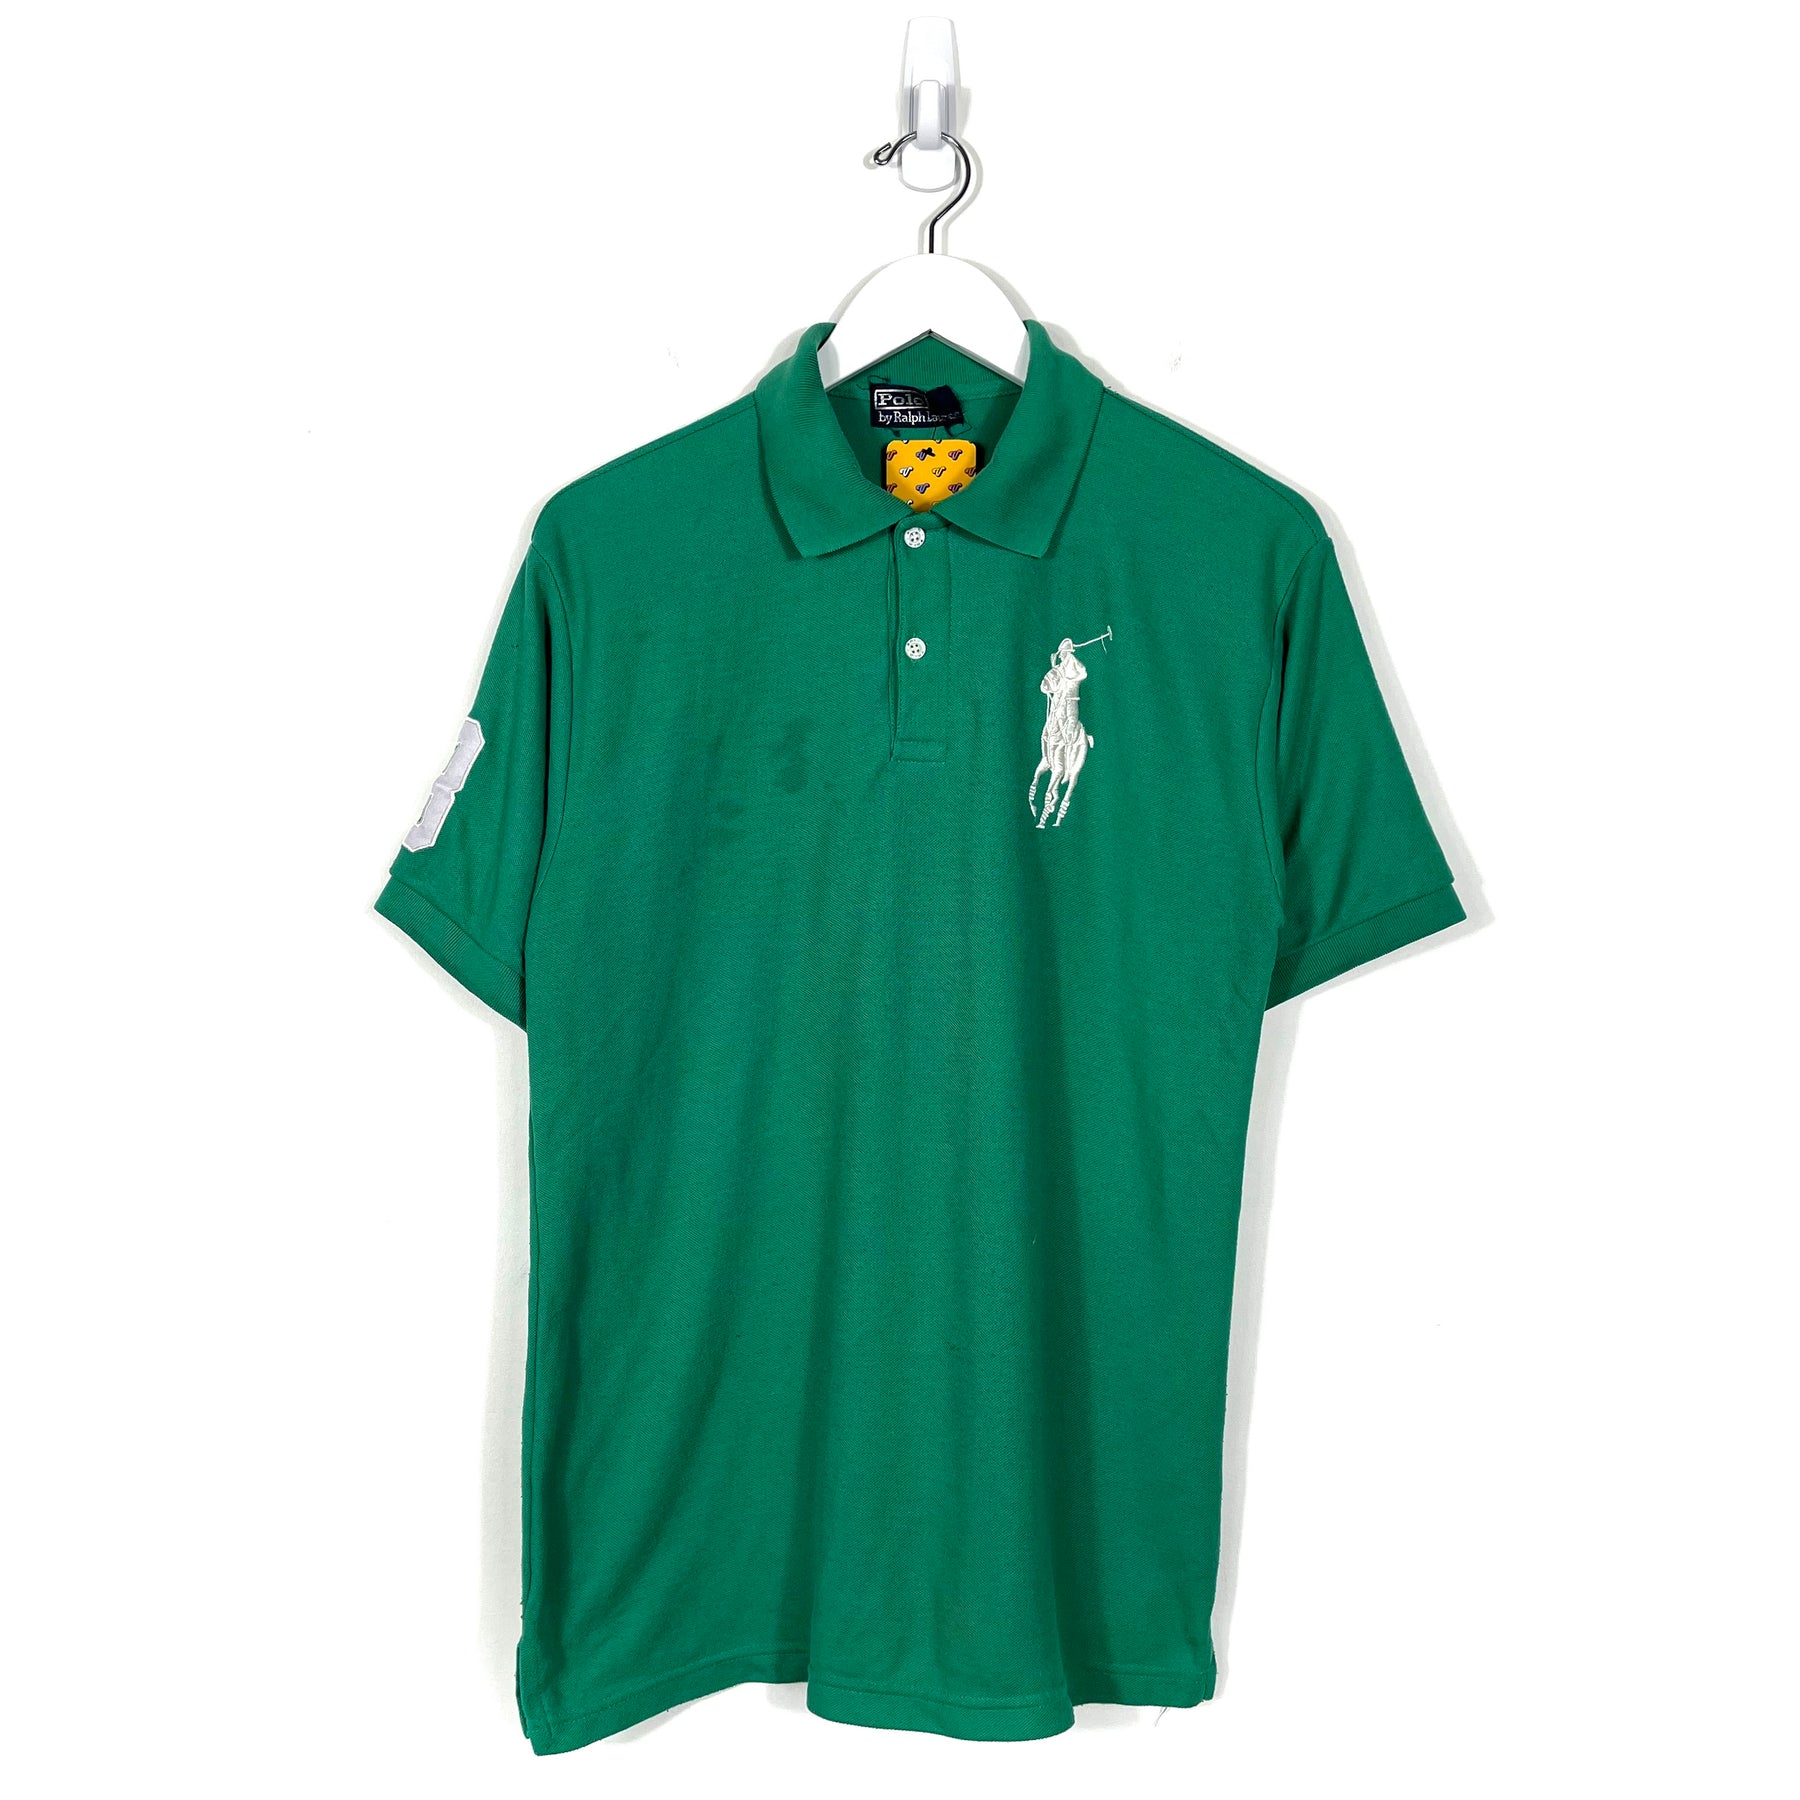 Vintage Polo Ralph Lauren Polo Shirt - Men's Small